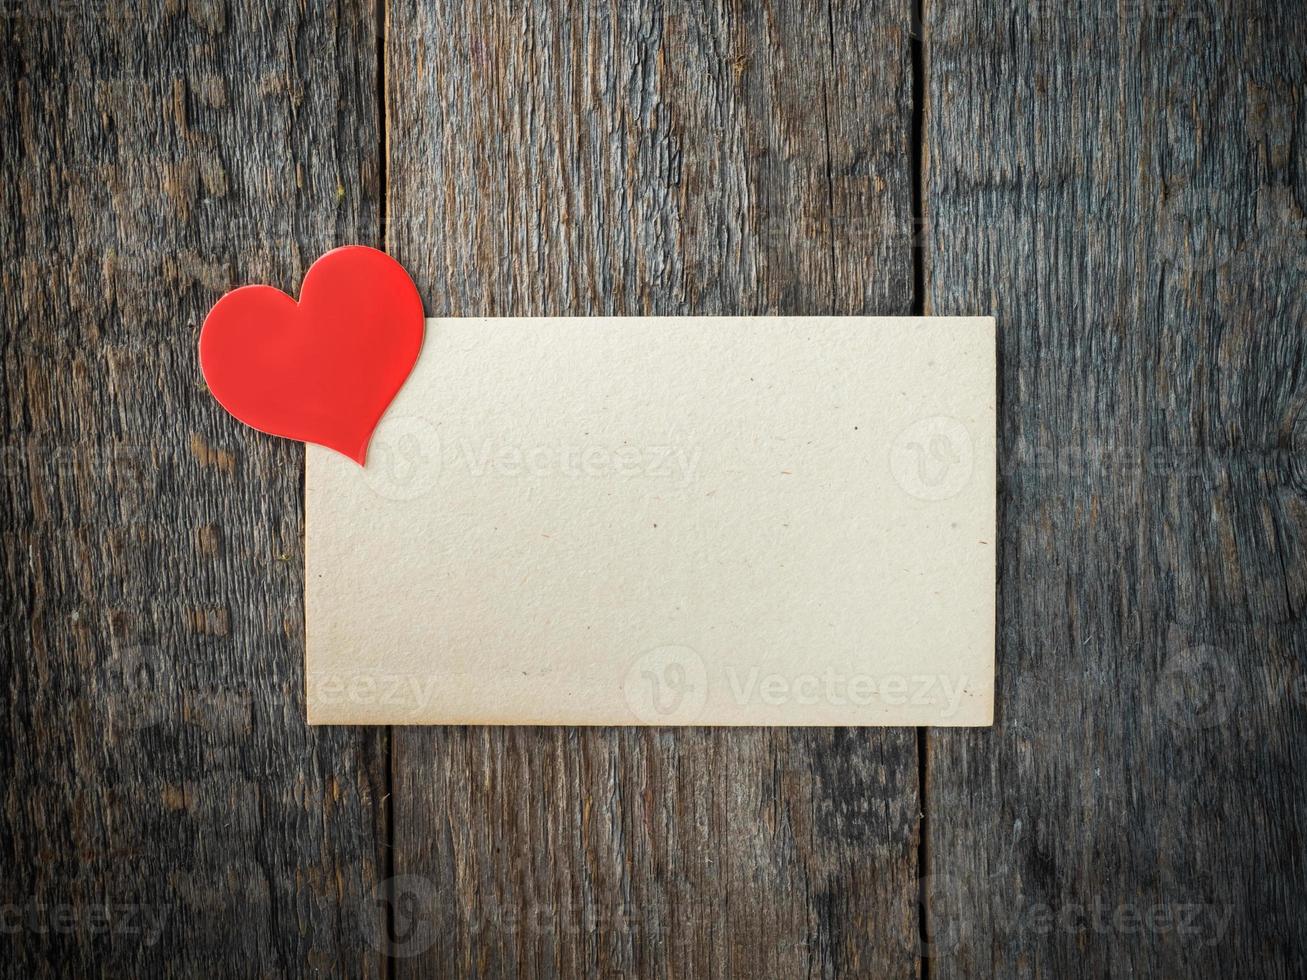 papper hjärta på ett gammal ark av papper på rustik trä- bakgrund foto